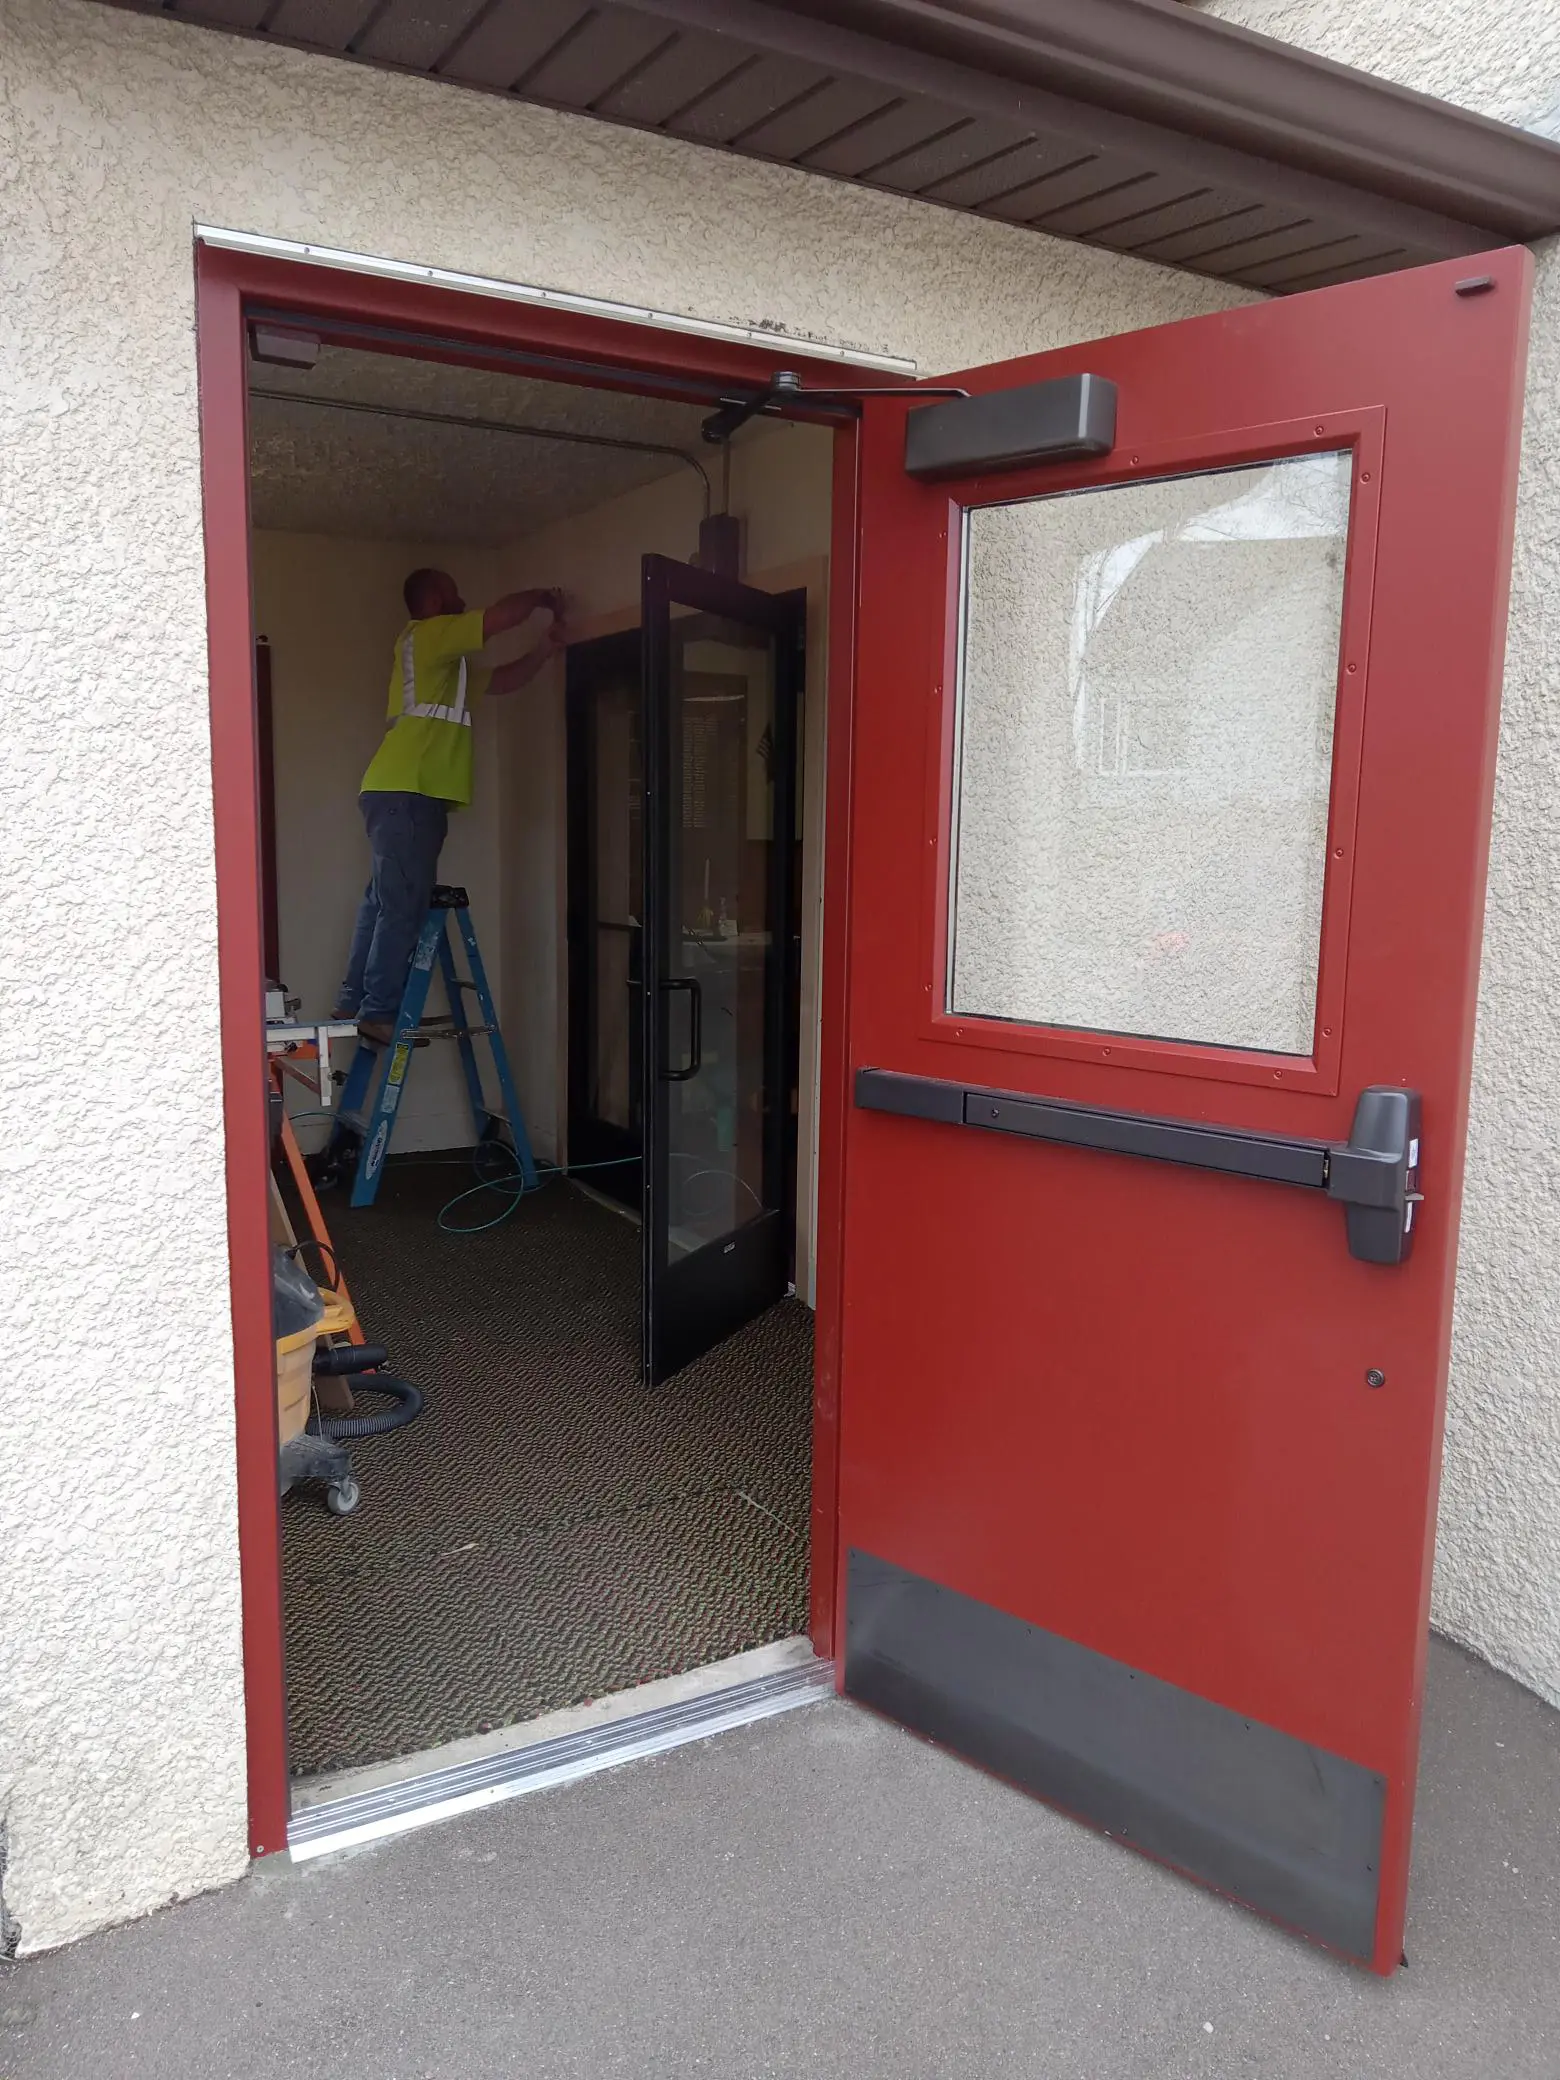 Versacon Employee repairing doors at the VFW